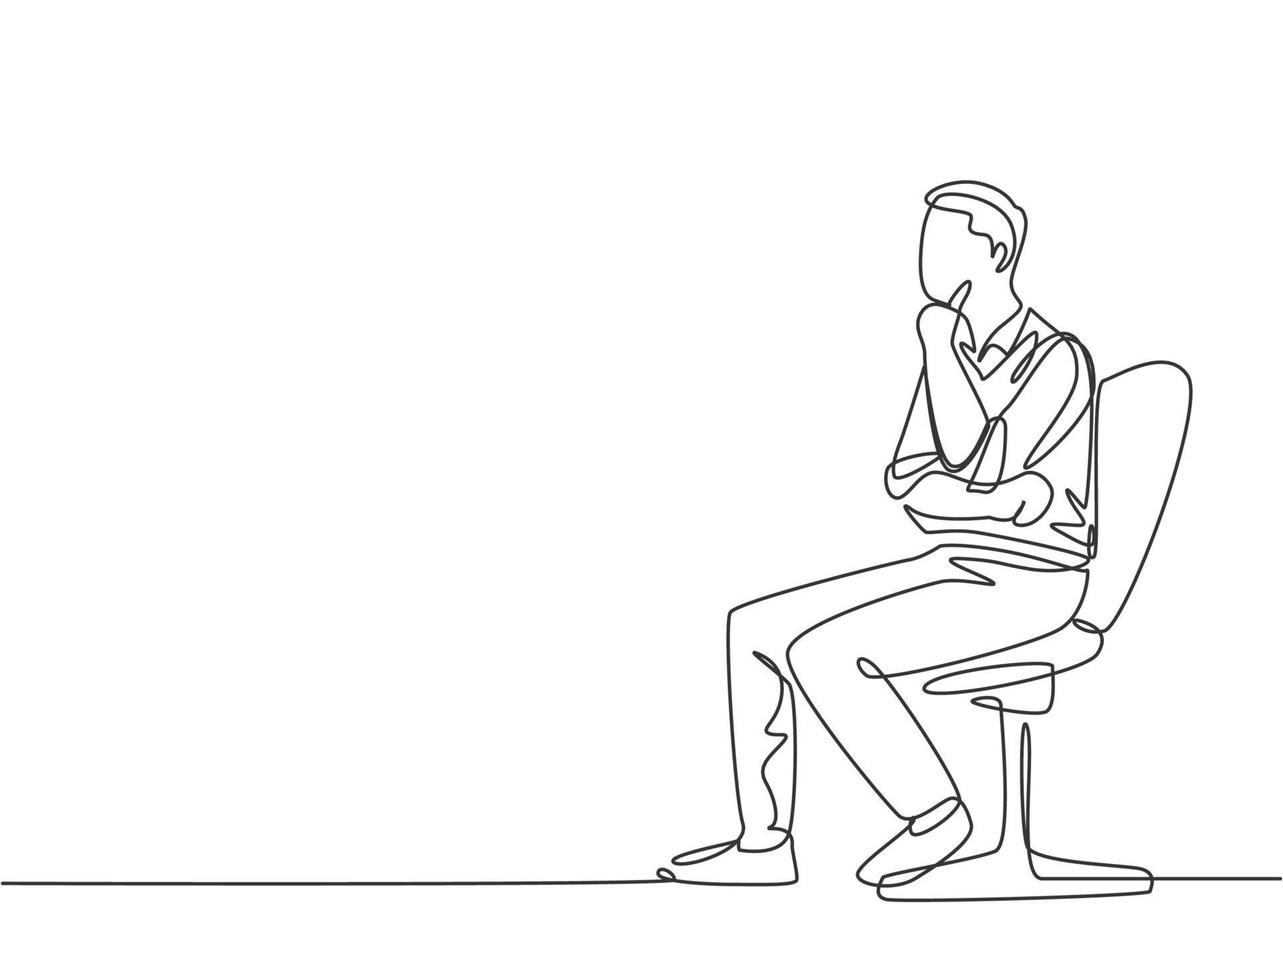 enkele doorlopende lijntekening van jonge mannelijke startup-oprichter zittend op een bureaustoel en focus denkende bedrijfsgroeistrategie. zakelijk denken concept een lijn tekenen ontwerp vectorillustratie vector